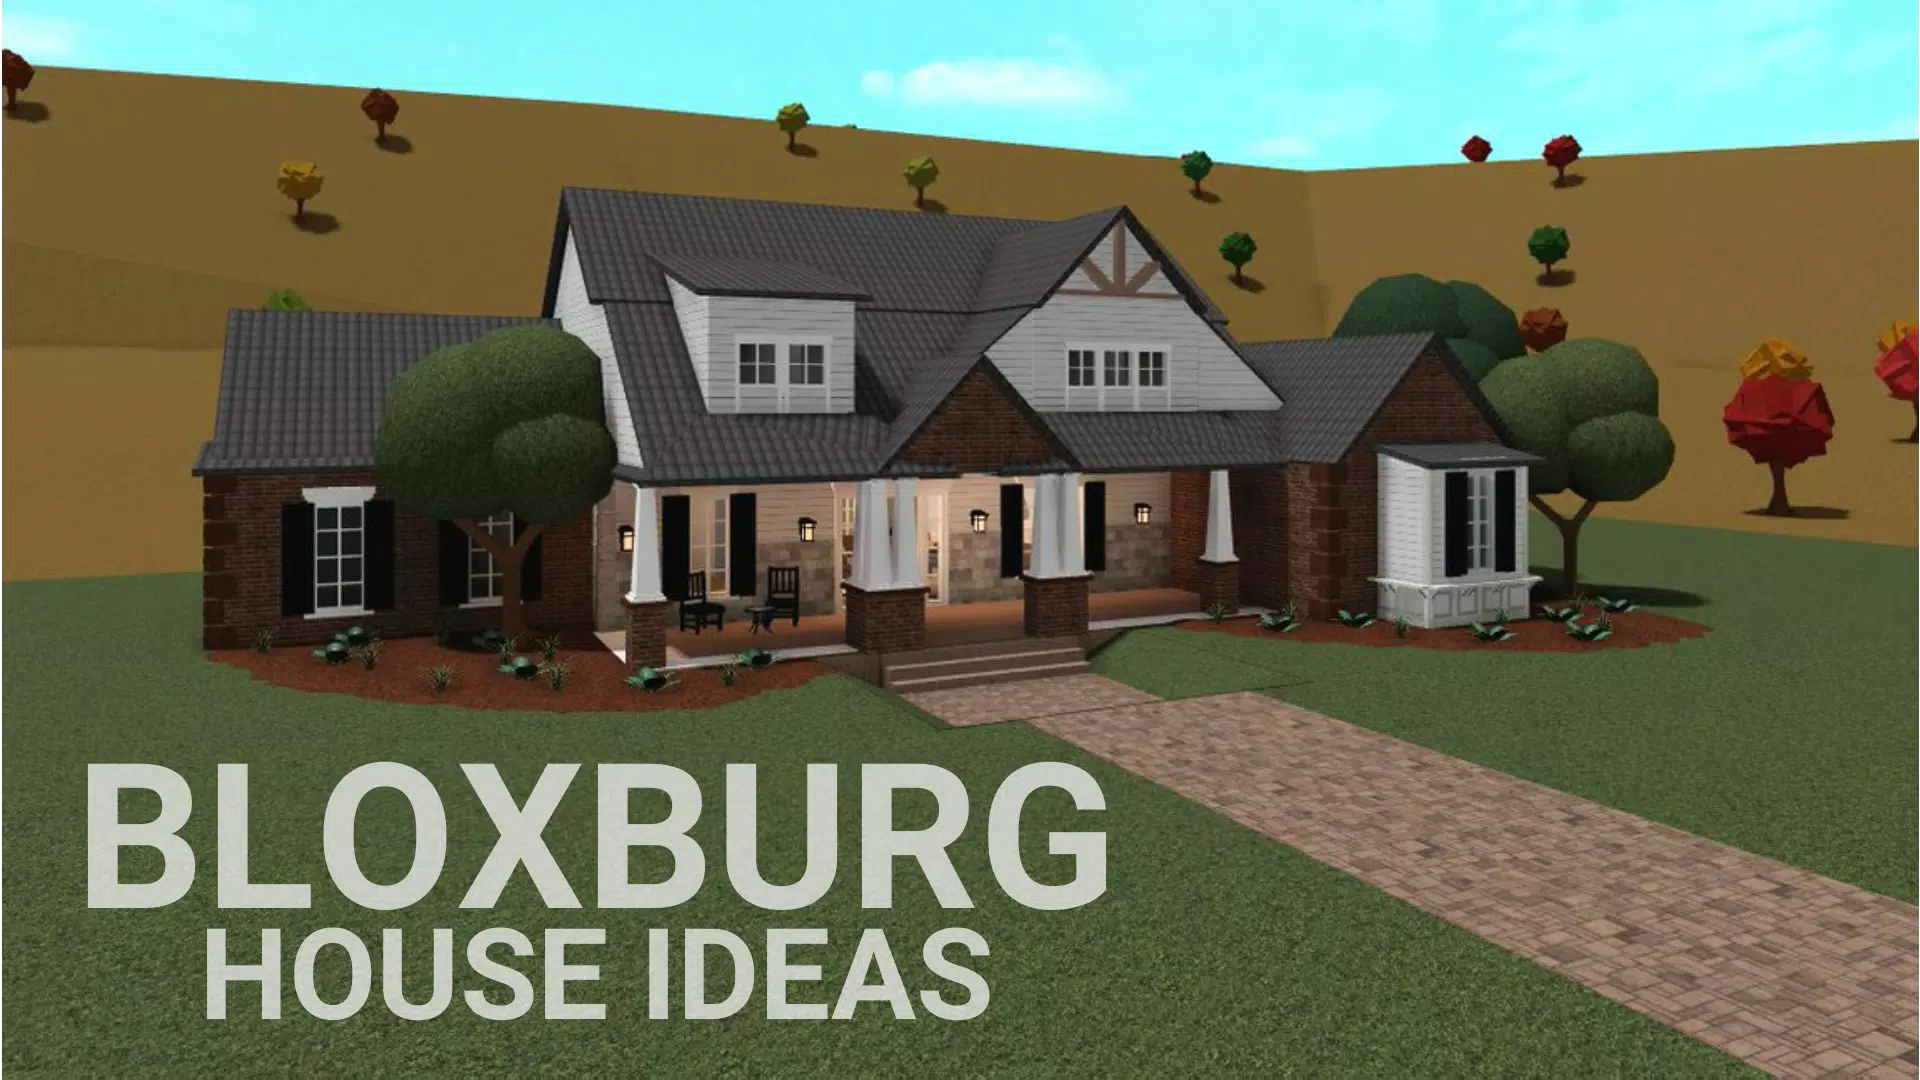 12 ideias de Ideias de casas de bloxburg  ideias de casas, design de casa,  idéias de decoração de casa